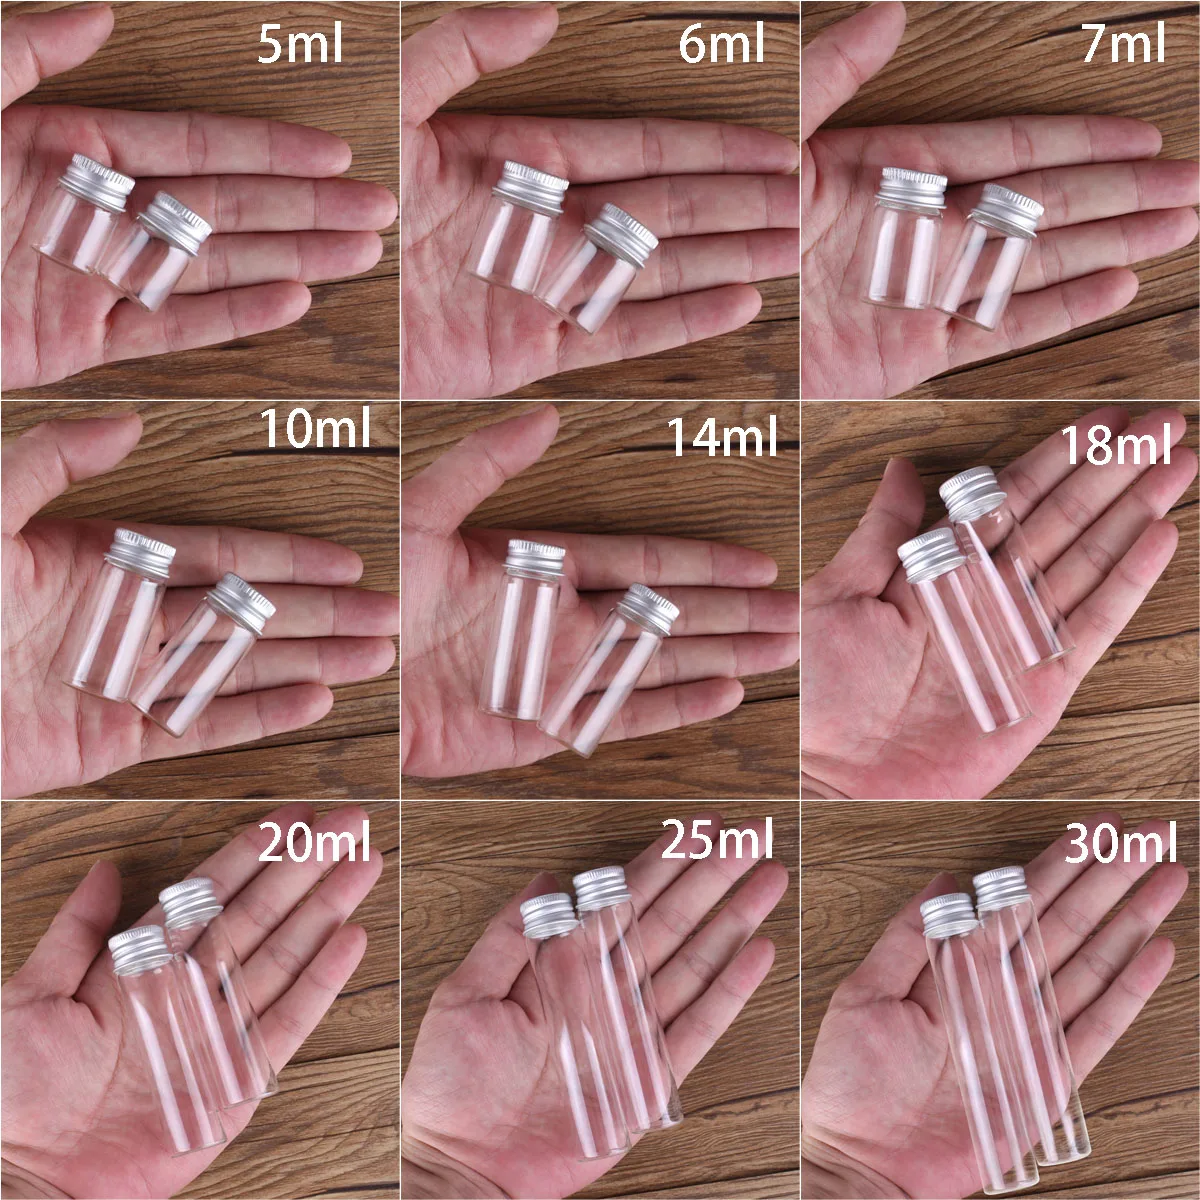 10 pieces 5ml/6ml/7ml/10ml/14ml/18ml/20ml/25ml/30ml Glass Bottles with Aluminium Lids Small Mini Glass Jars 9 Sizes U-pick